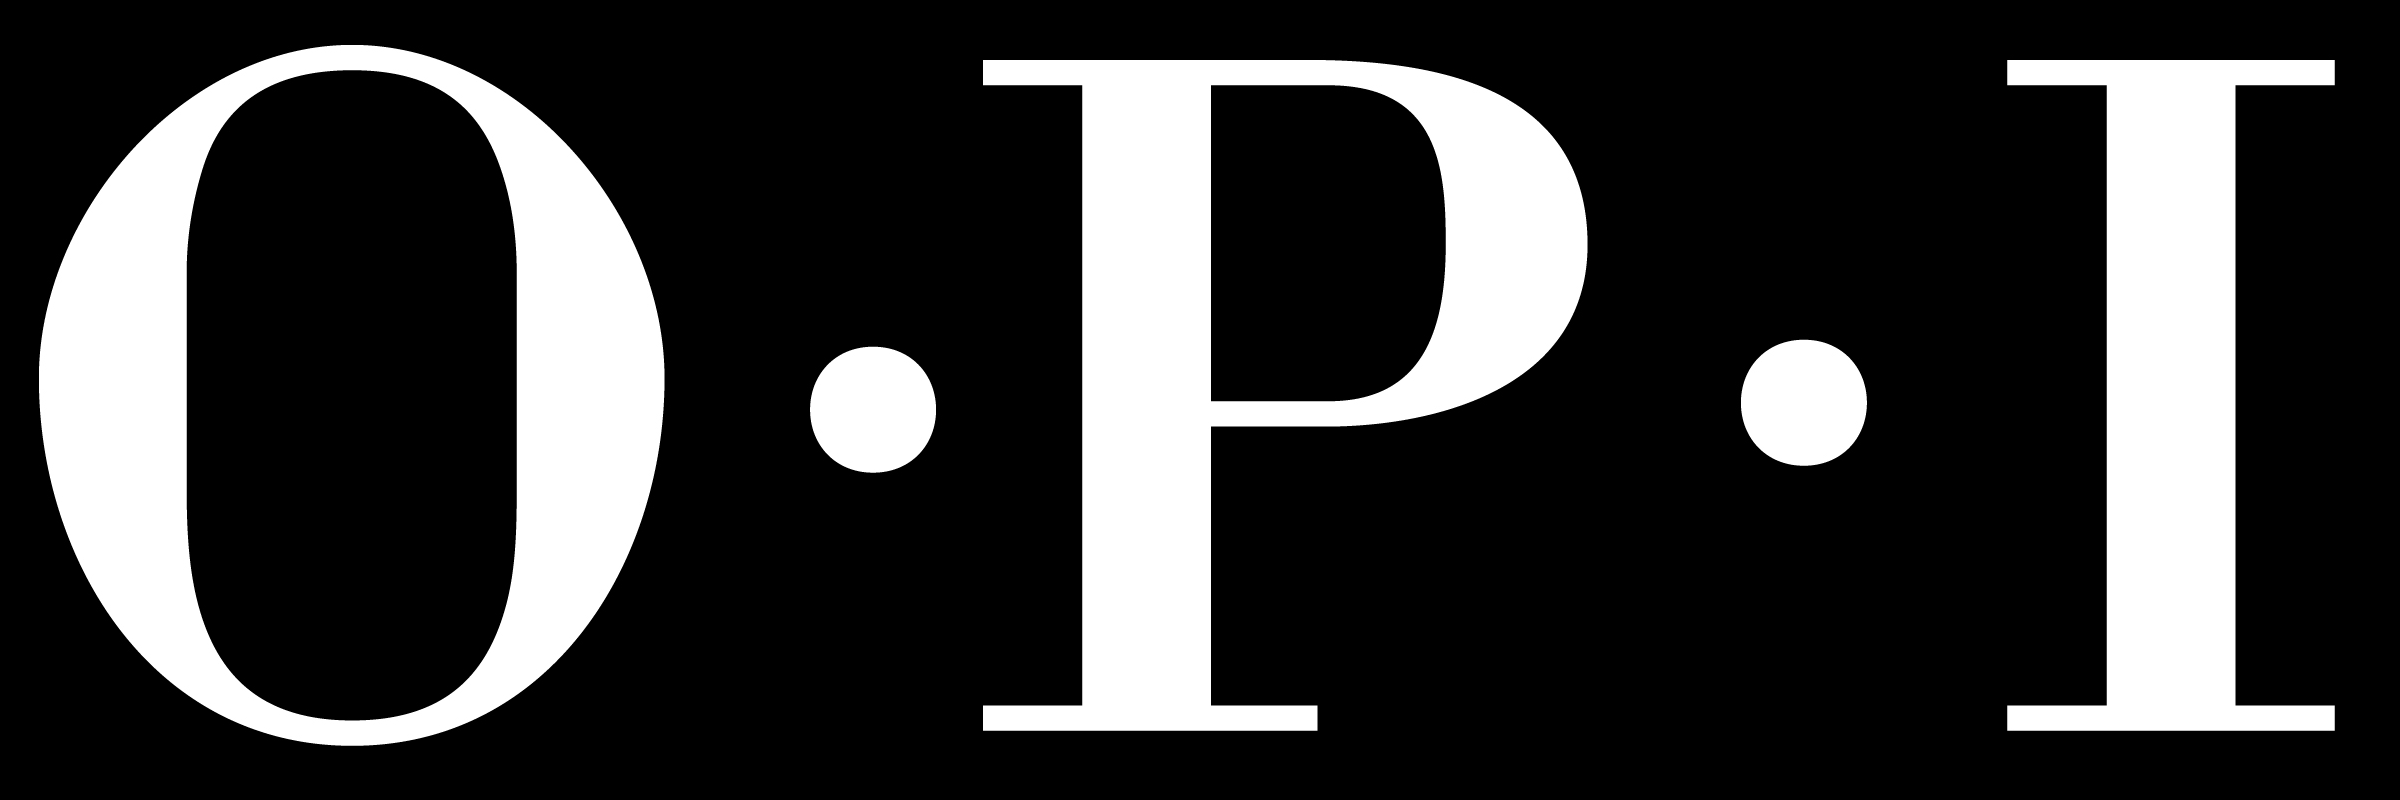 OPI Logo - OPI – Logos Download